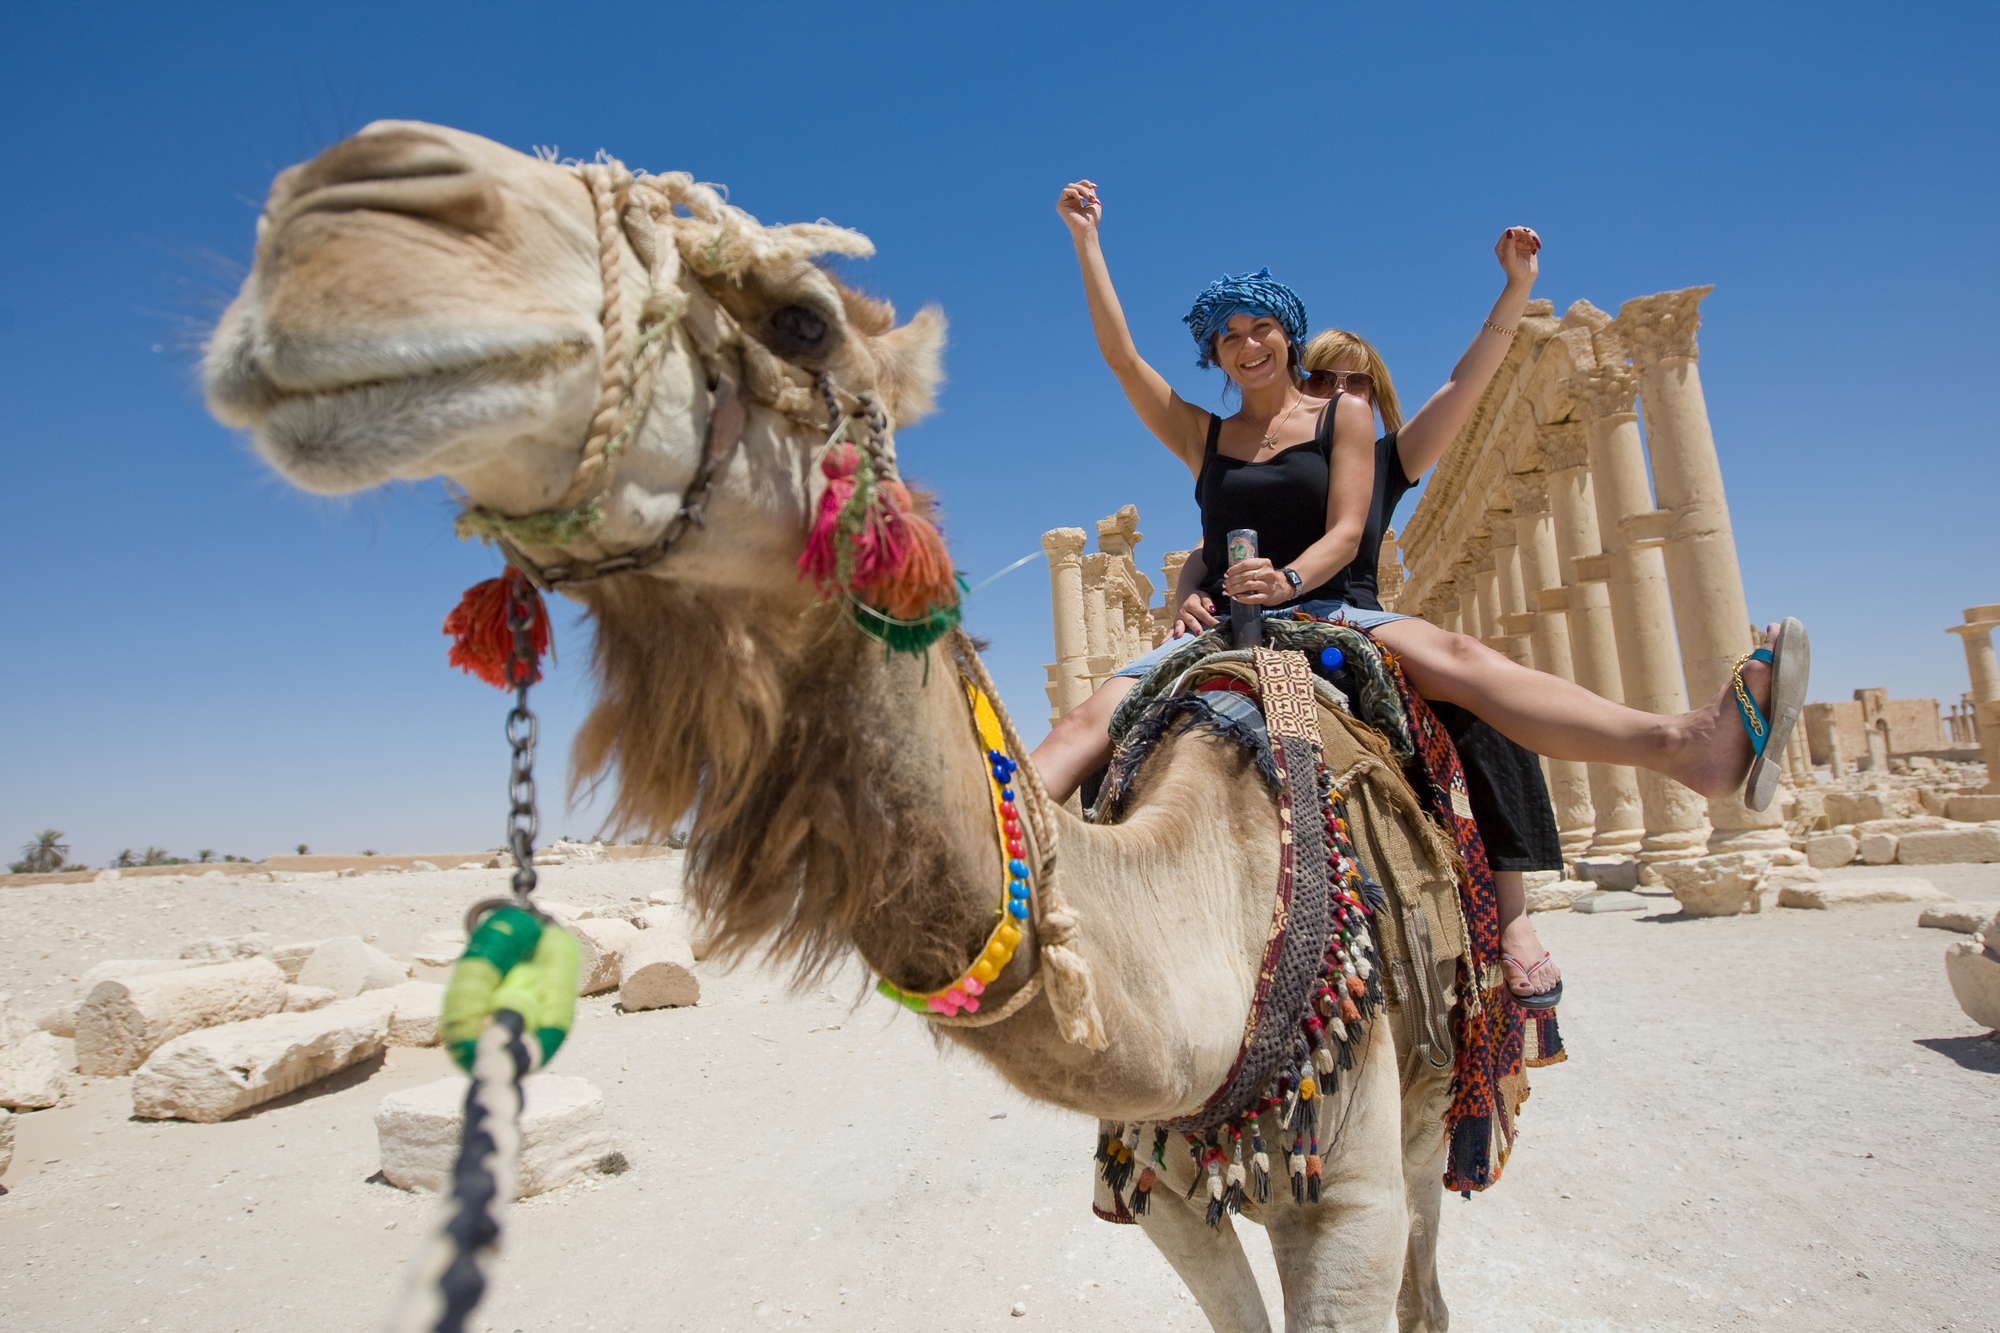 two girls riding on camel in desert